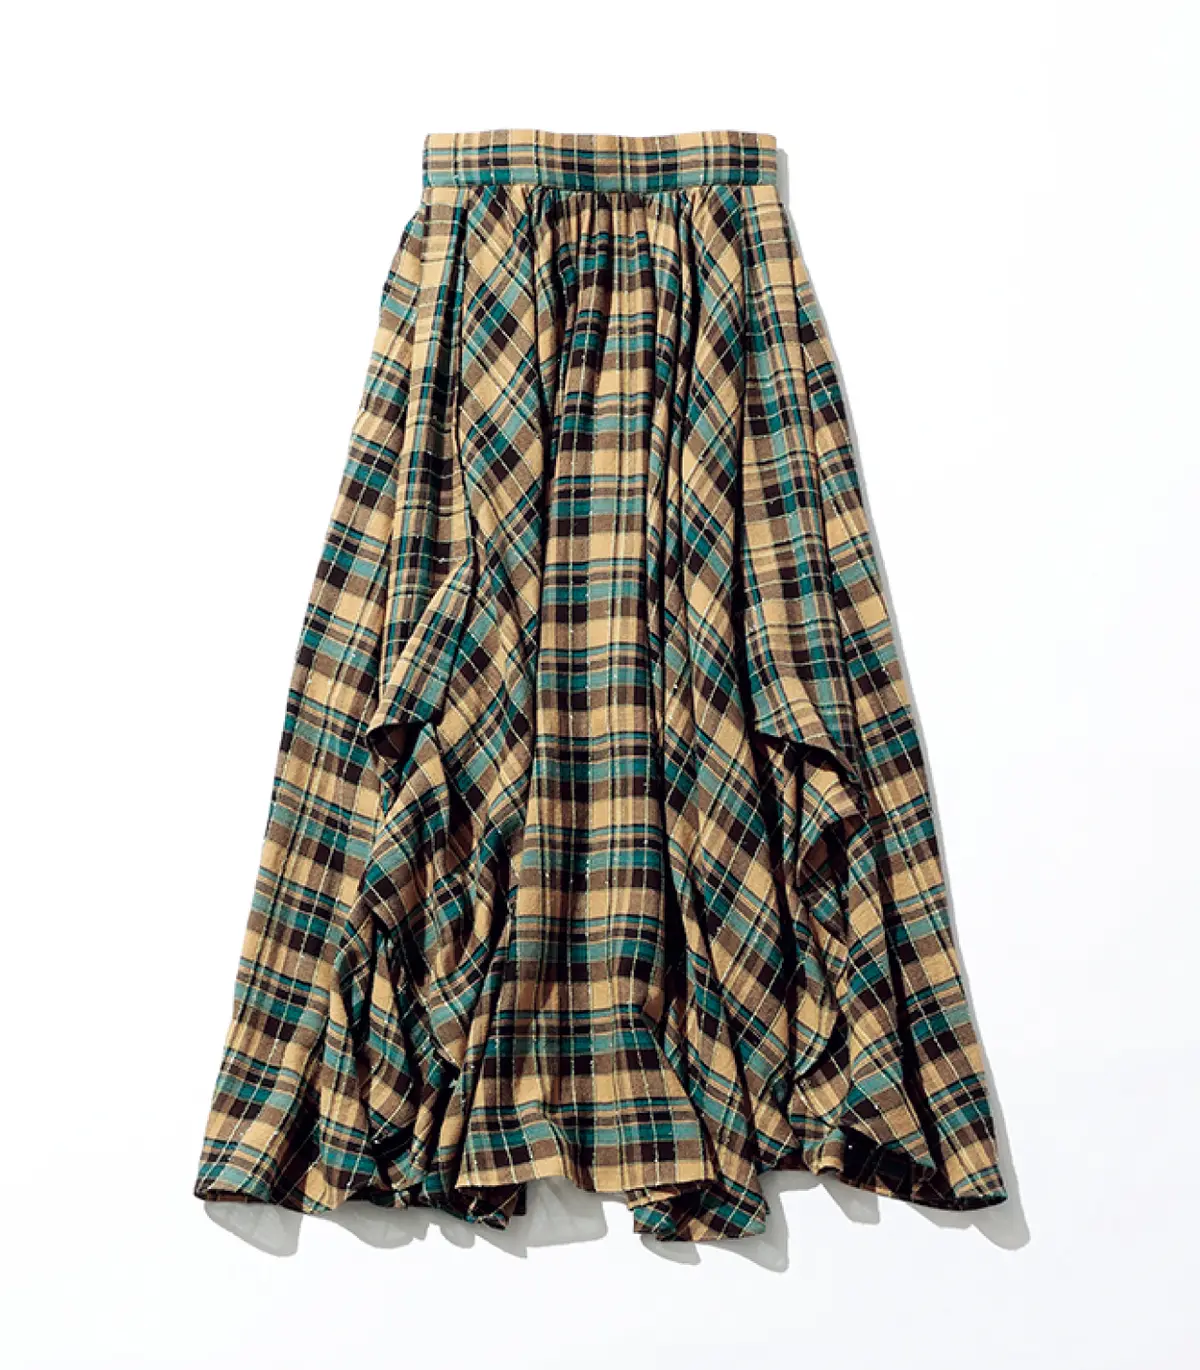 『ダブルスタンダードクロージング』のチェック柄スカート